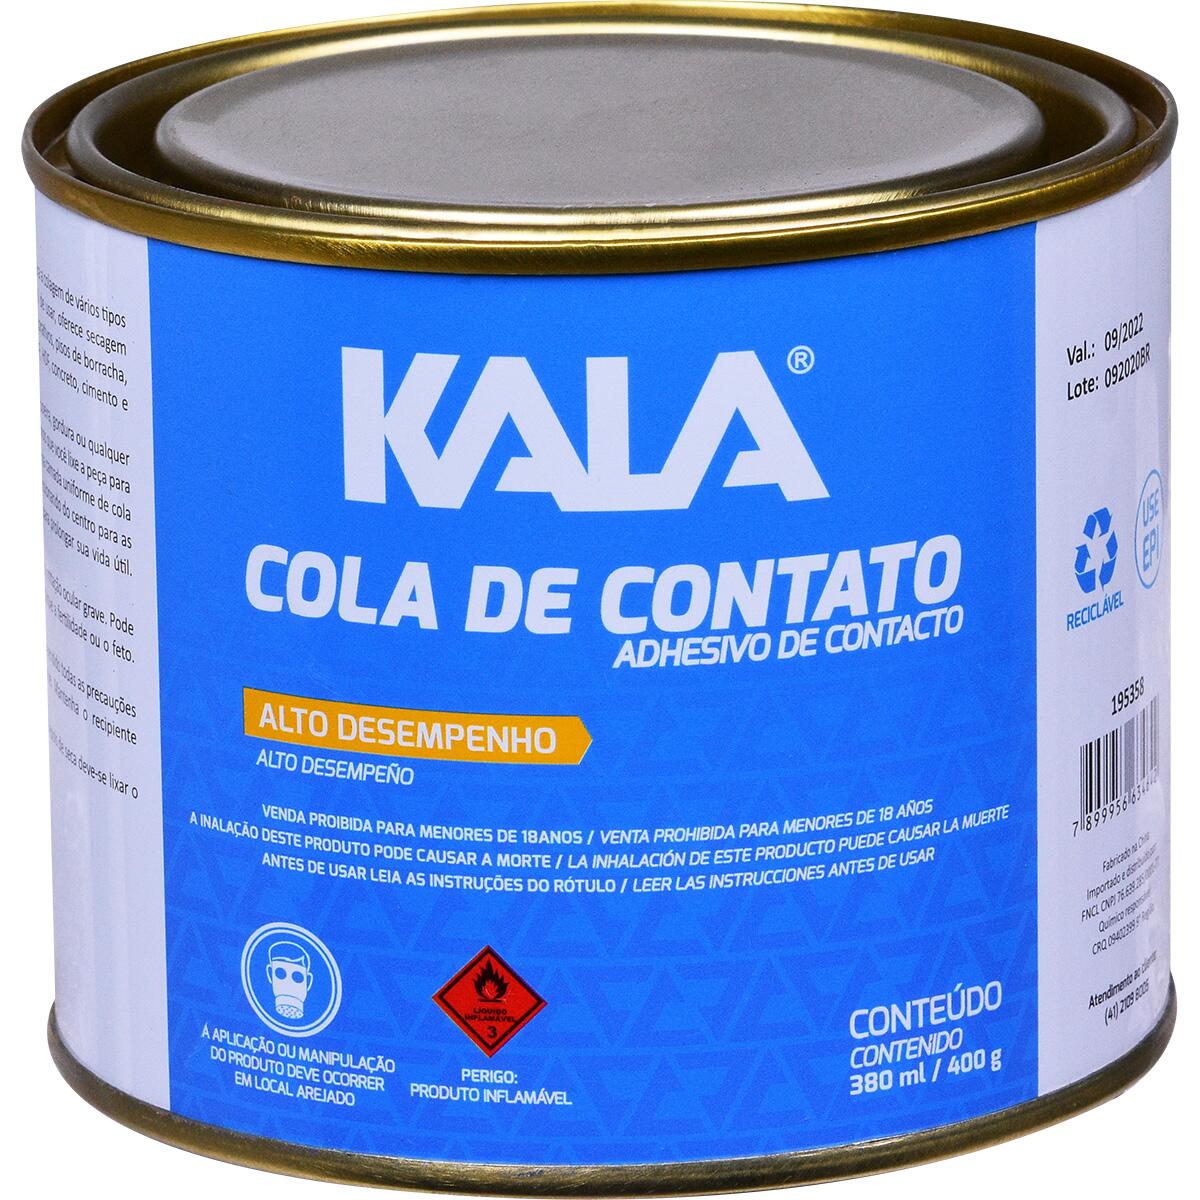 Adesivo Cola de Contato Lata 400G Kala